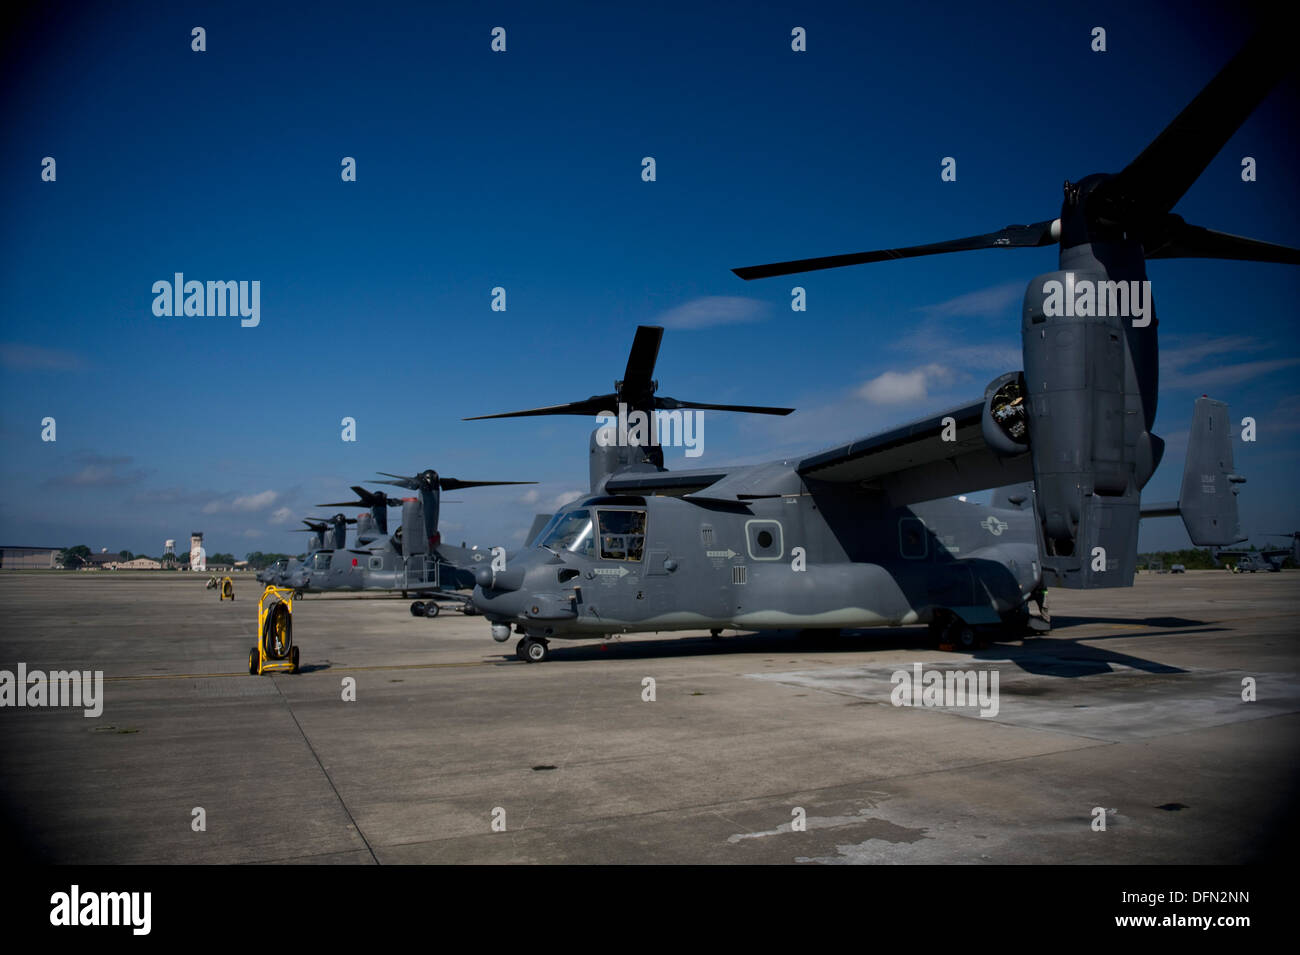 U.S. Air Force CV-22 Ospreys attendre pour écarter la piste à Hurlburt Field, en Floride, le 3 octobre 2013. L'avion a décollé en préparation de l'arrivée possible de la tempête tropicale Karen. Banque D'Images